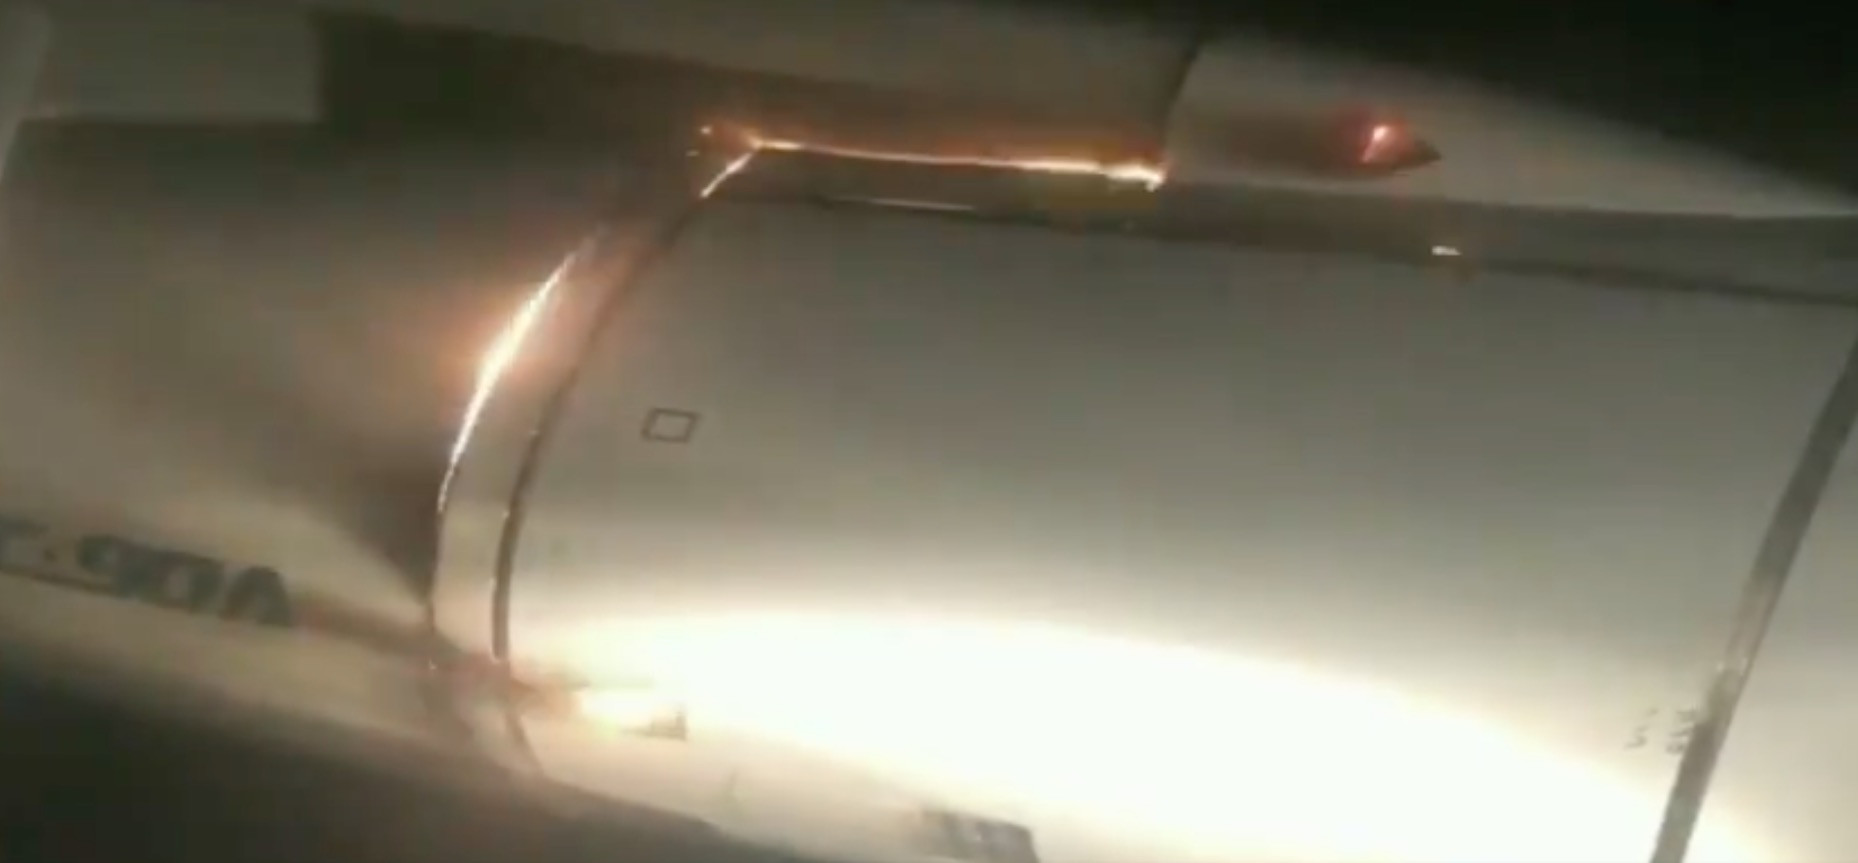 Επιβάτες βιντεοσκόπησαν την προσγείωση του αεροπλάνου τους με φλεγόμενο κινητήρα [Βίντεο]